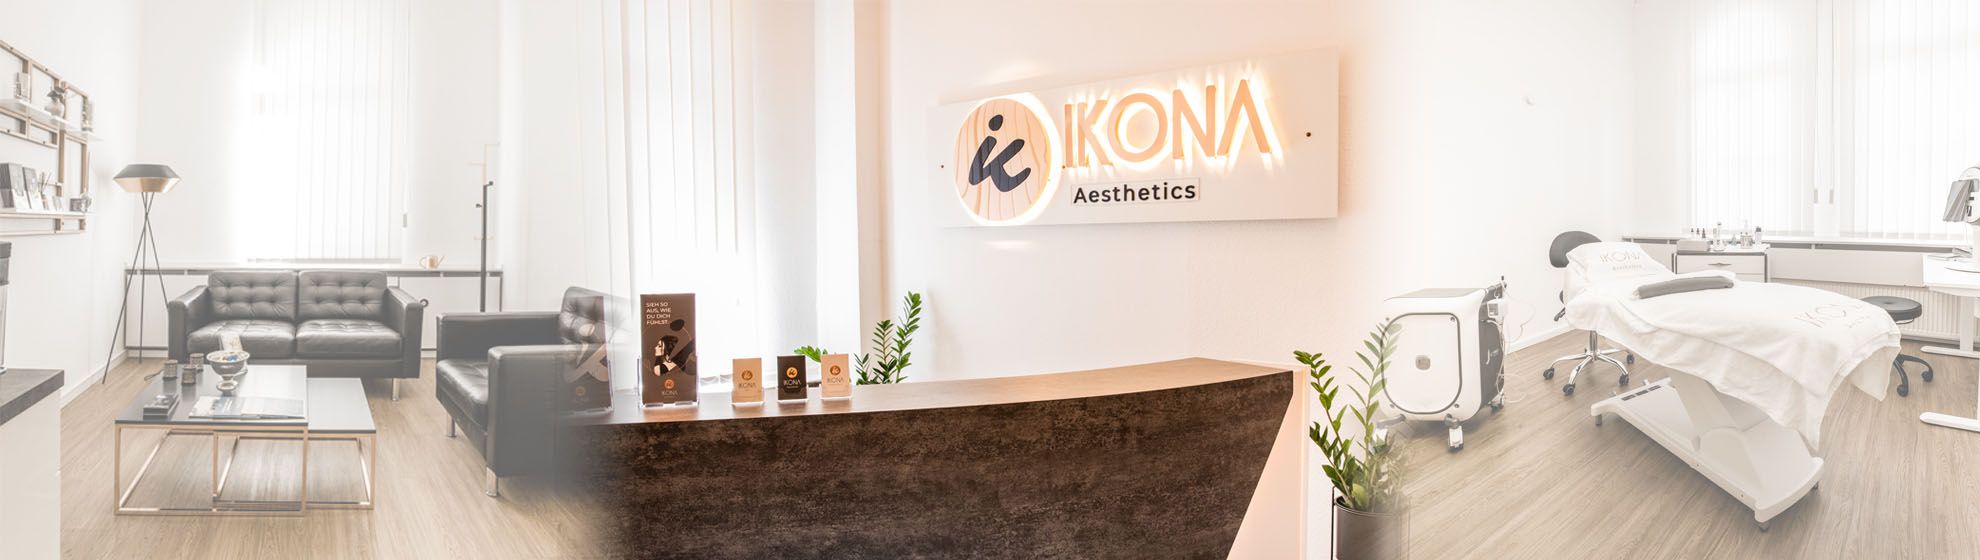 IKONA Aesthetics